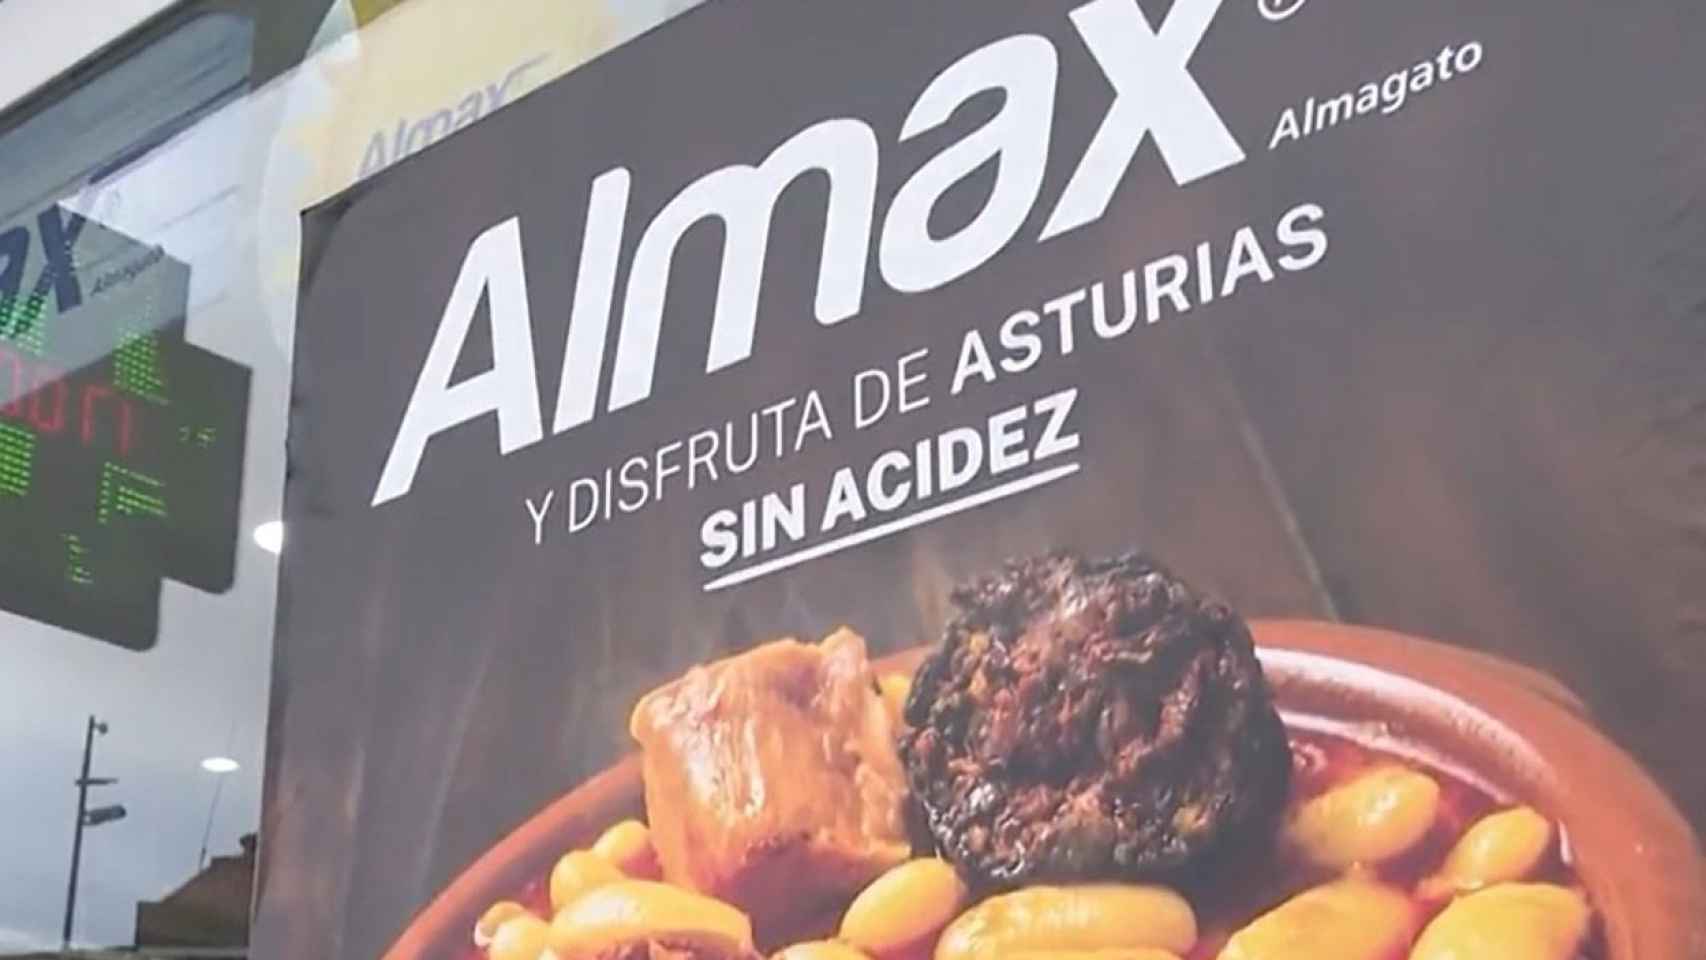 La campaña publicitaria de Almax en Asturias.